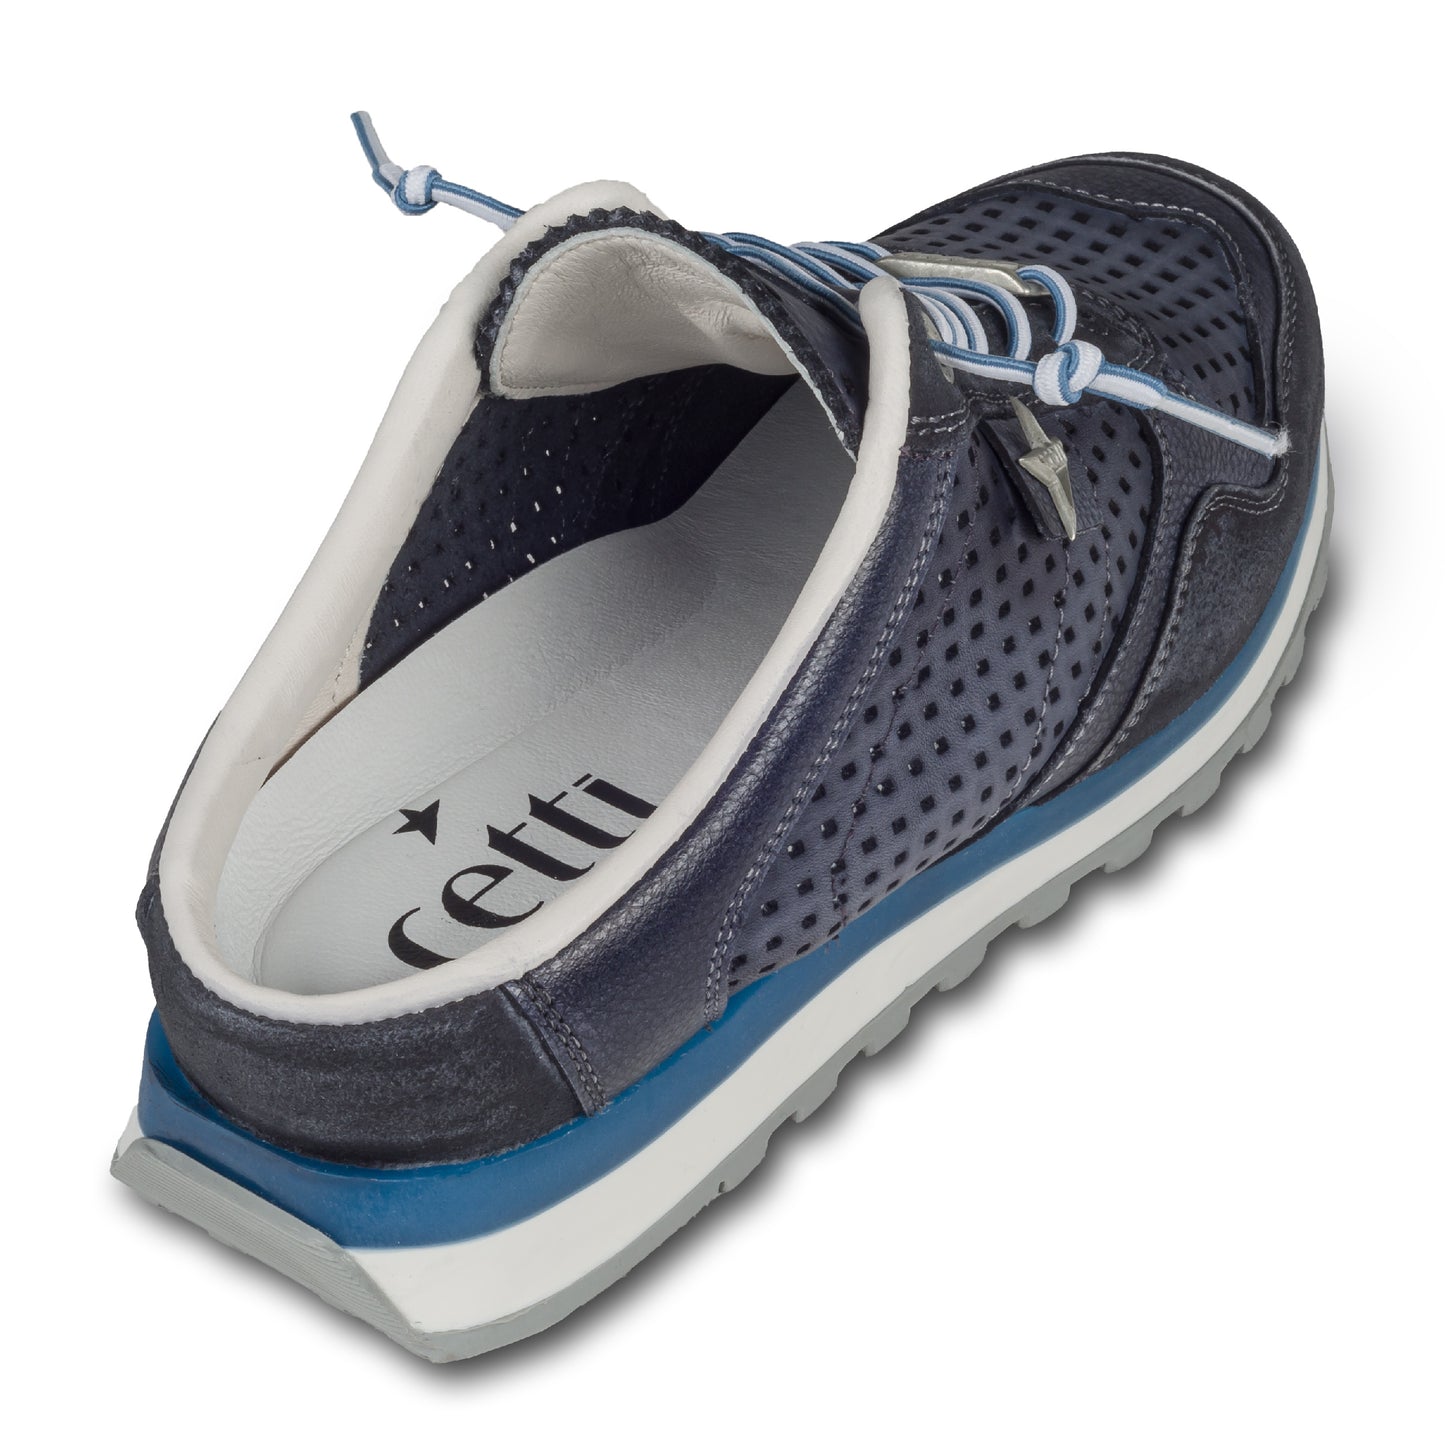 CETTI Herren Leder Sneaker-Mule, Modell „C848“ in dunkelblau / grau (used tin antracita), Made in Spain. Ansicht der Ferse und Sohlenunterseite. Schräge Ansicht rechter Schuh von hinten.